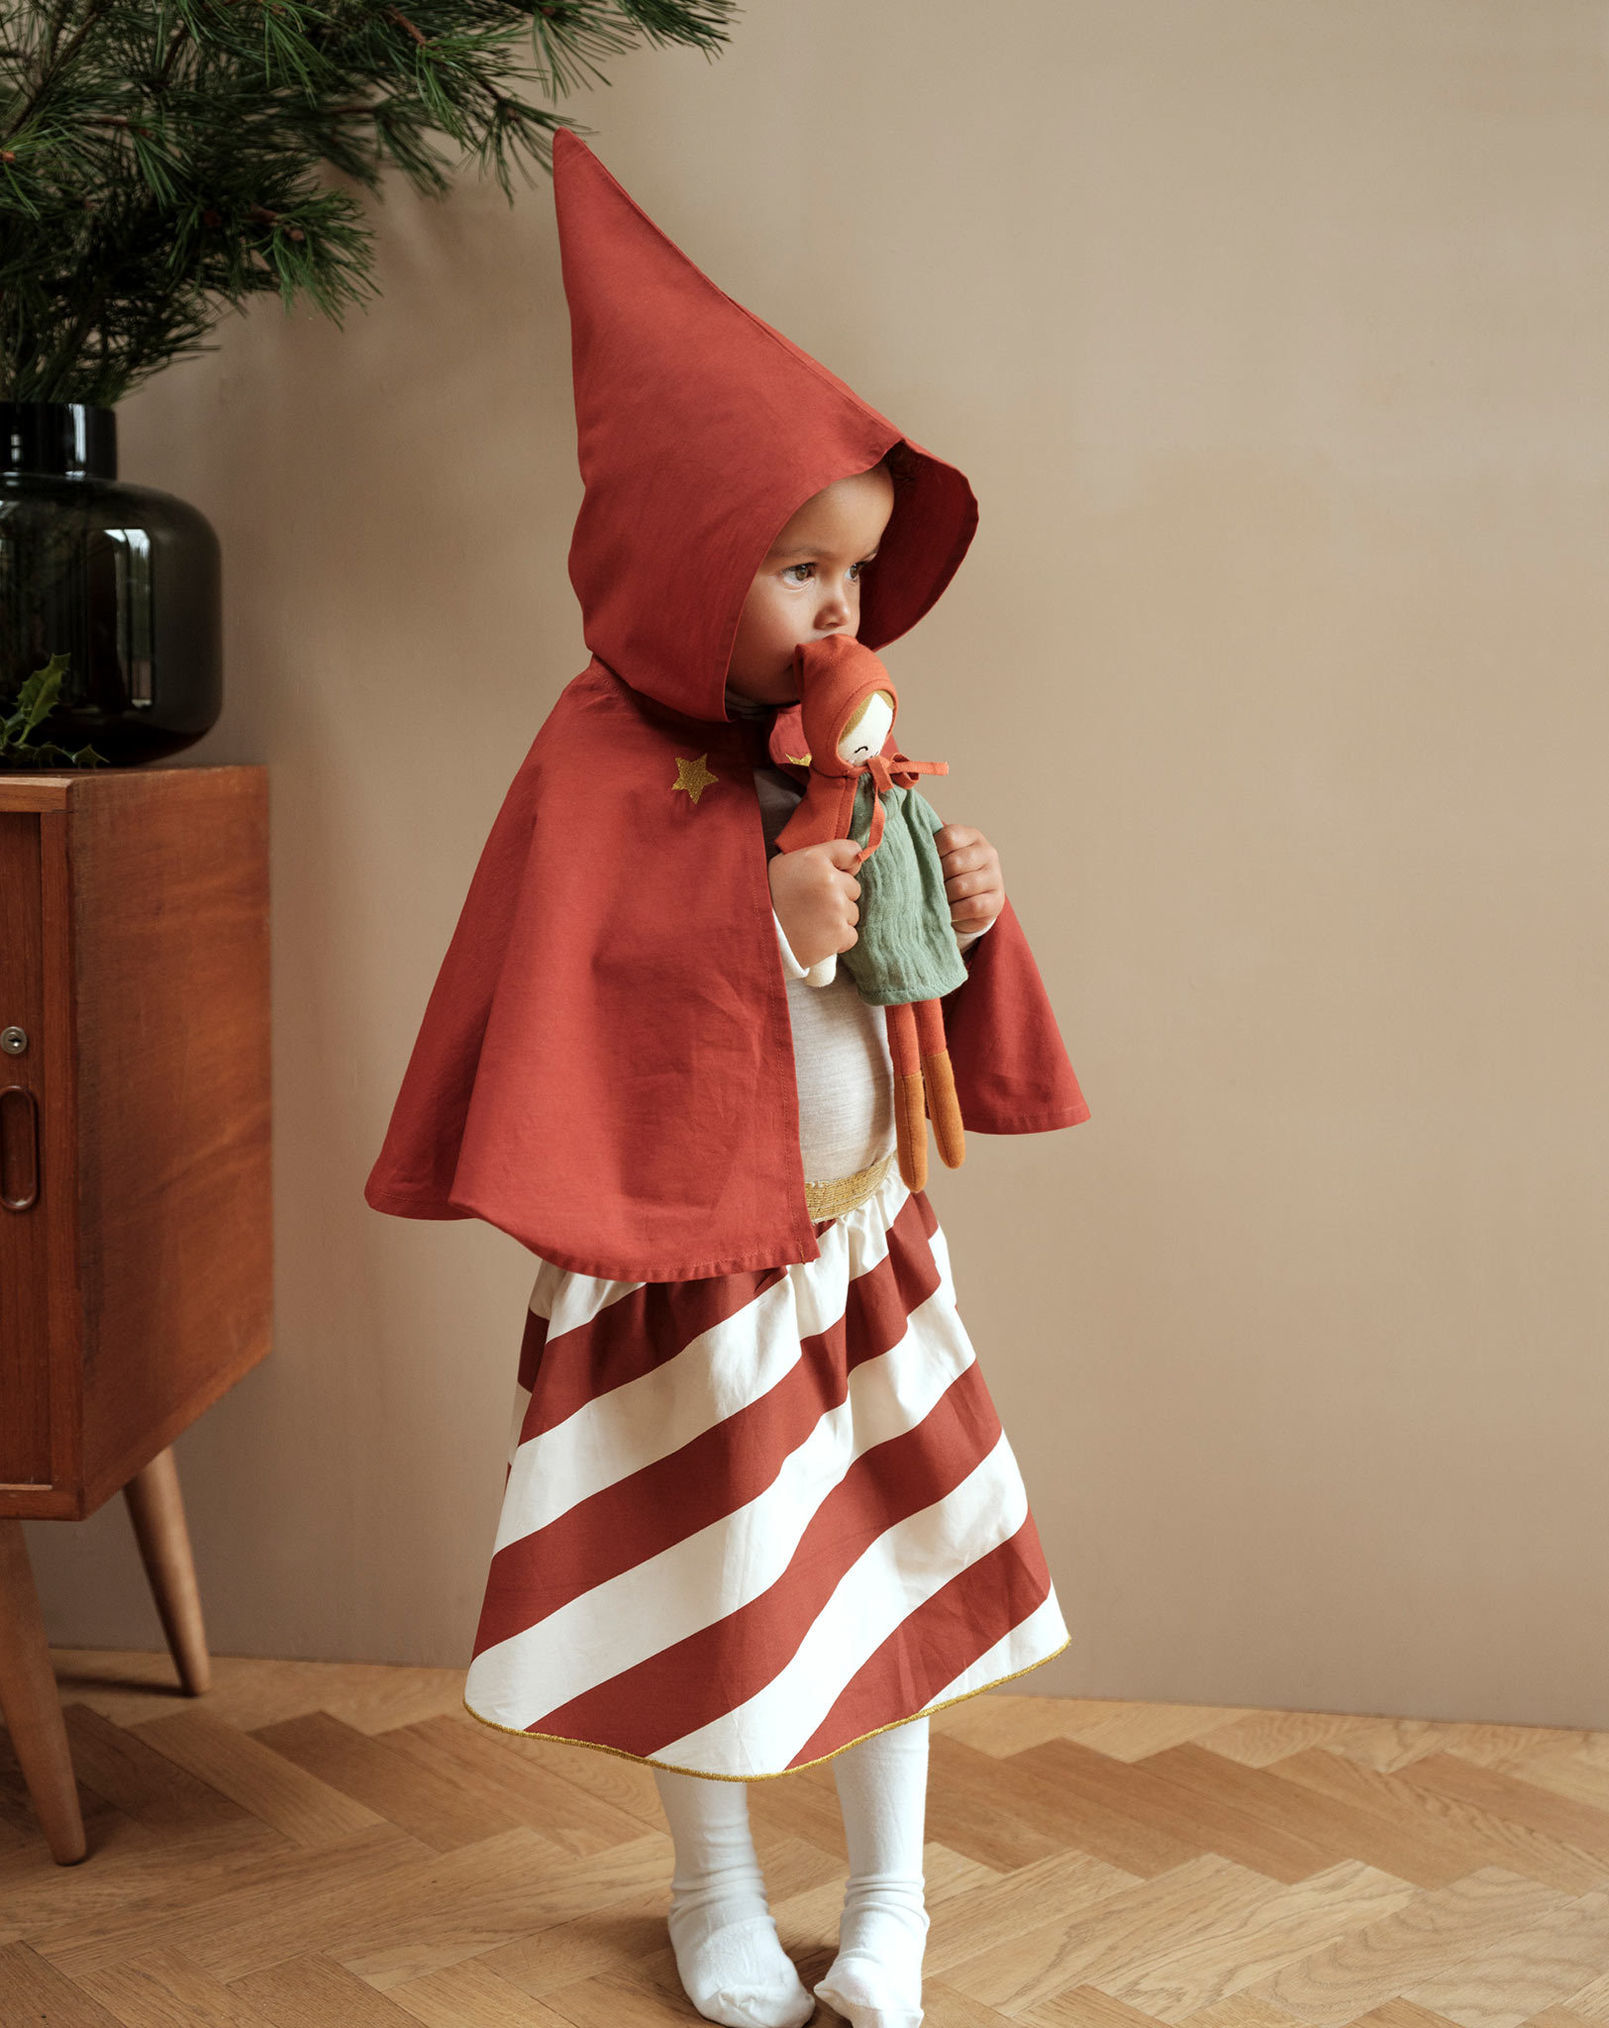 Kostüm-Set WALDELF 2-teilig in rot kaufen | tausendkind.at